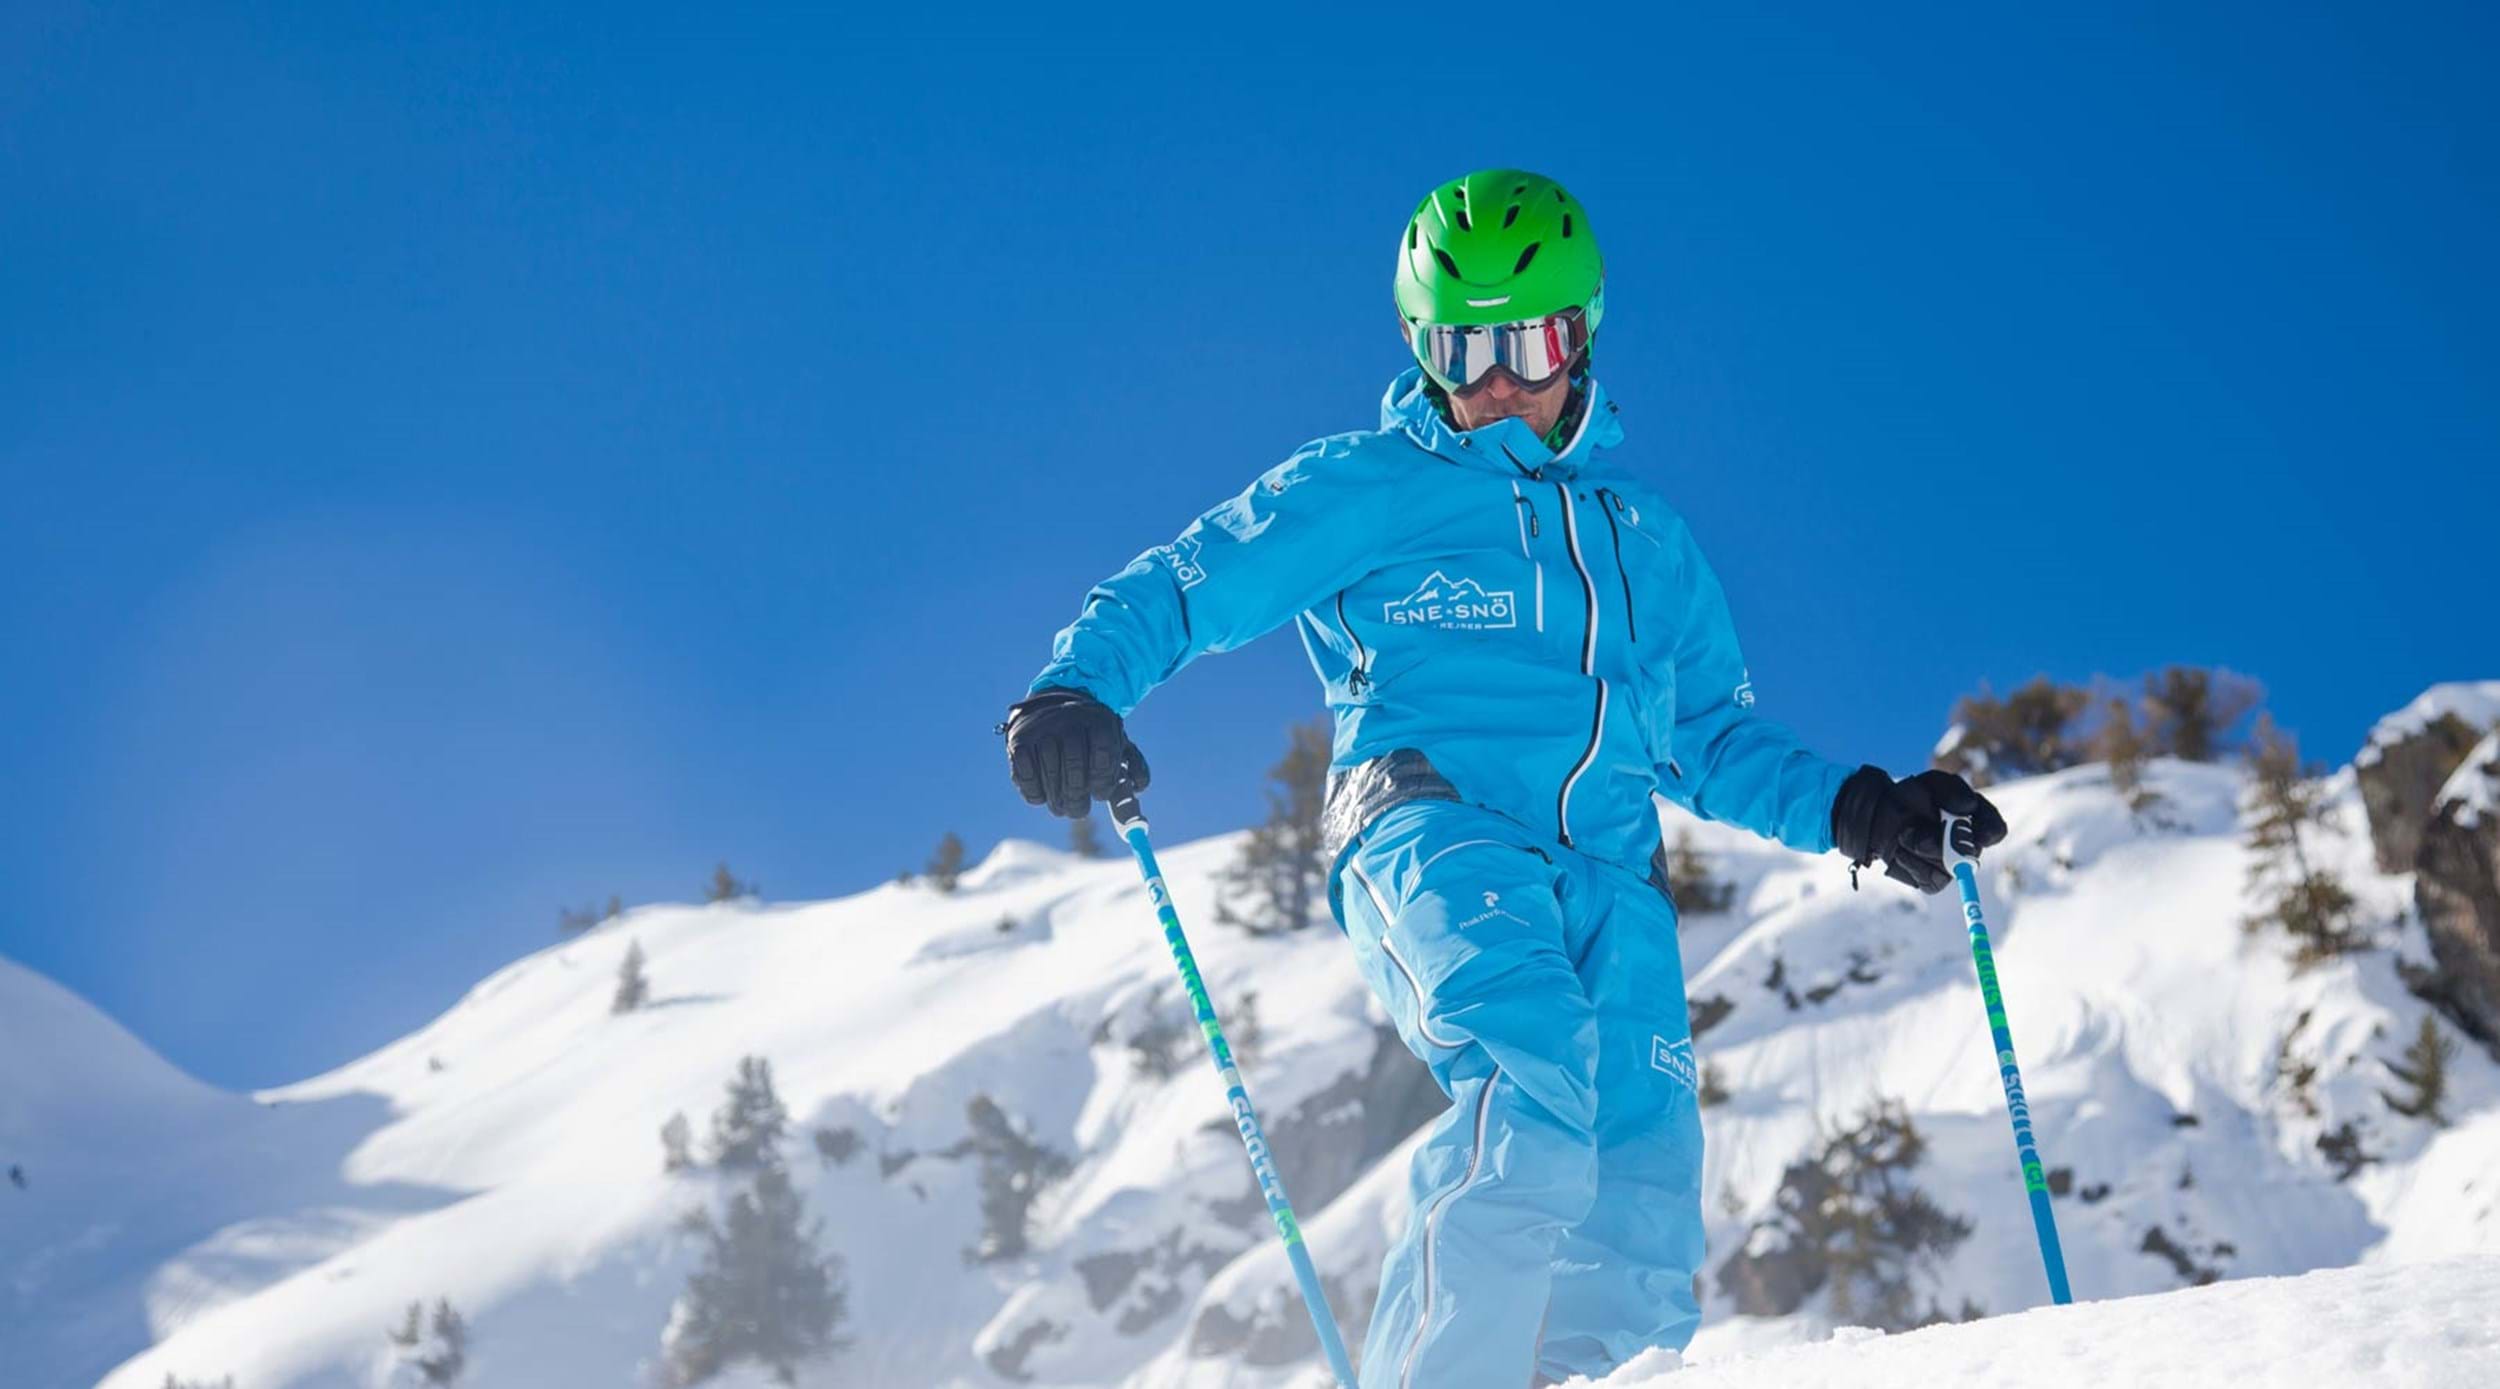 Uge 7 skirejser - Bestil skiferie til 2023 nu!